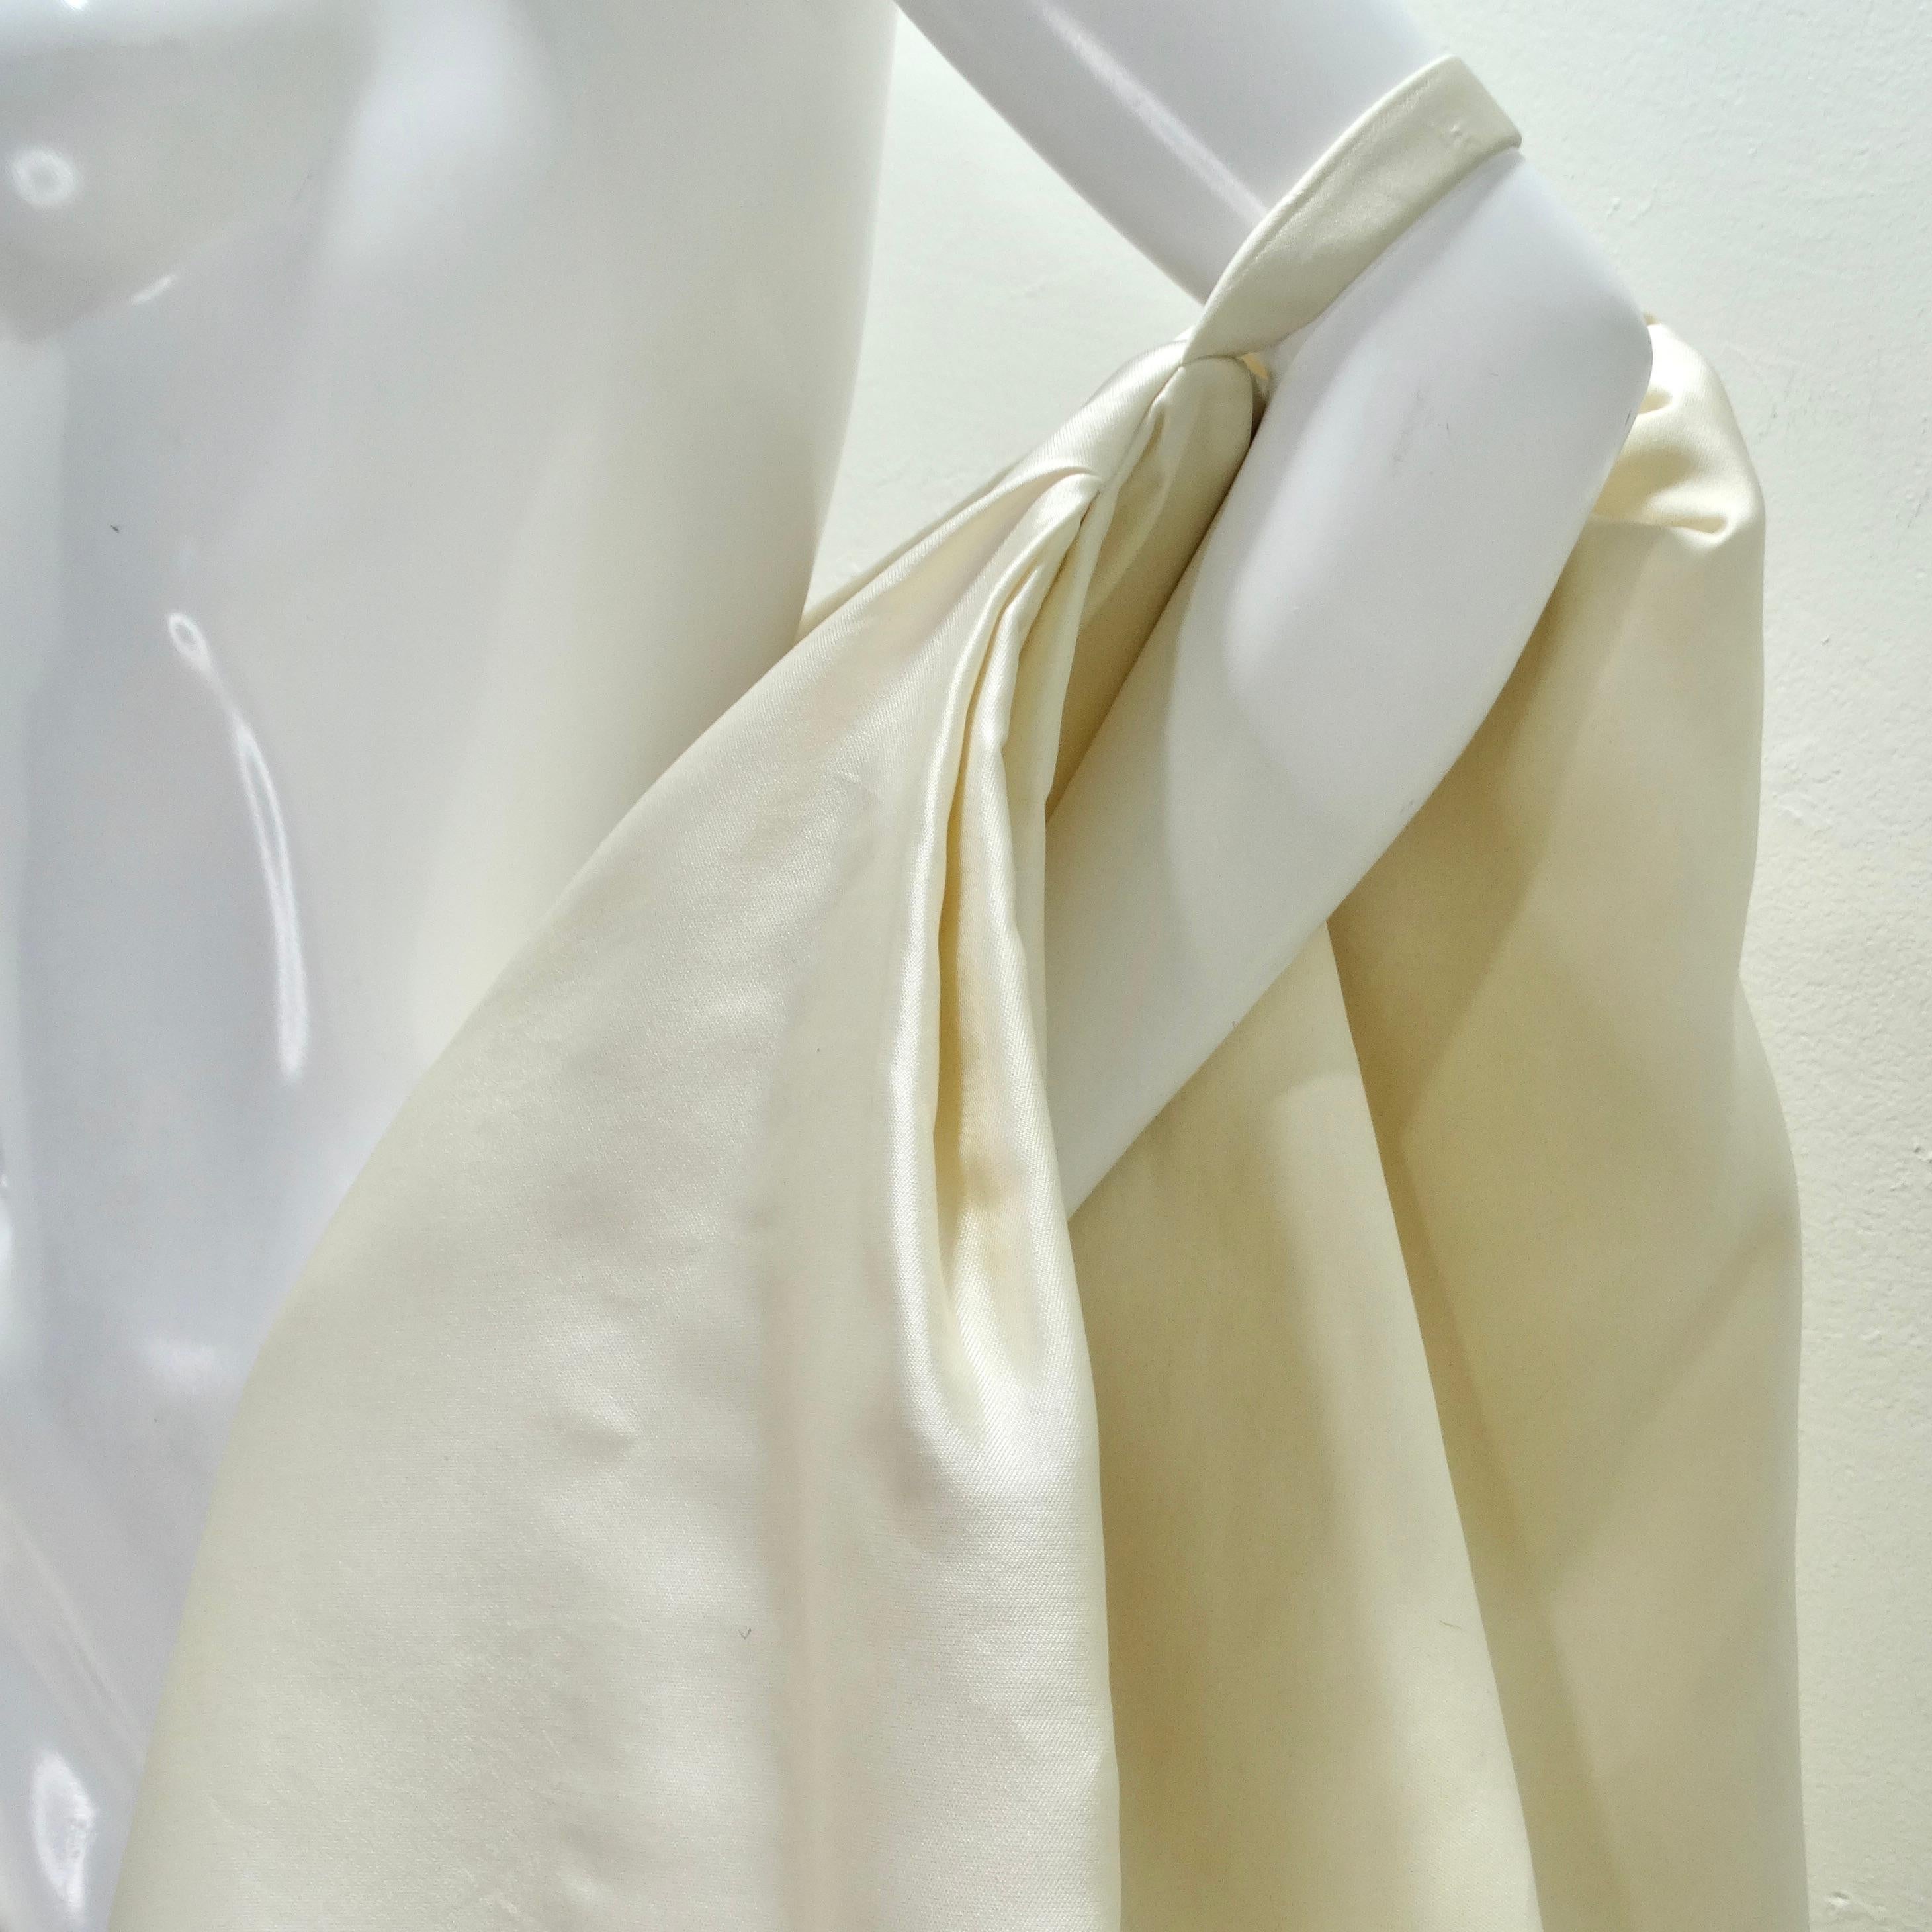 Ein Hauch von Vintage-Glamour mit dem Donna Karan Seidenumhang aus den 1980er Jahren - ein einzigartiges und elegantes Stylingteil, das die Essenz zeitloser Raffinesse einfängt. Dieser dramatische Umhang aus luxuriöser elfenbeinfarbener Seide sitzt